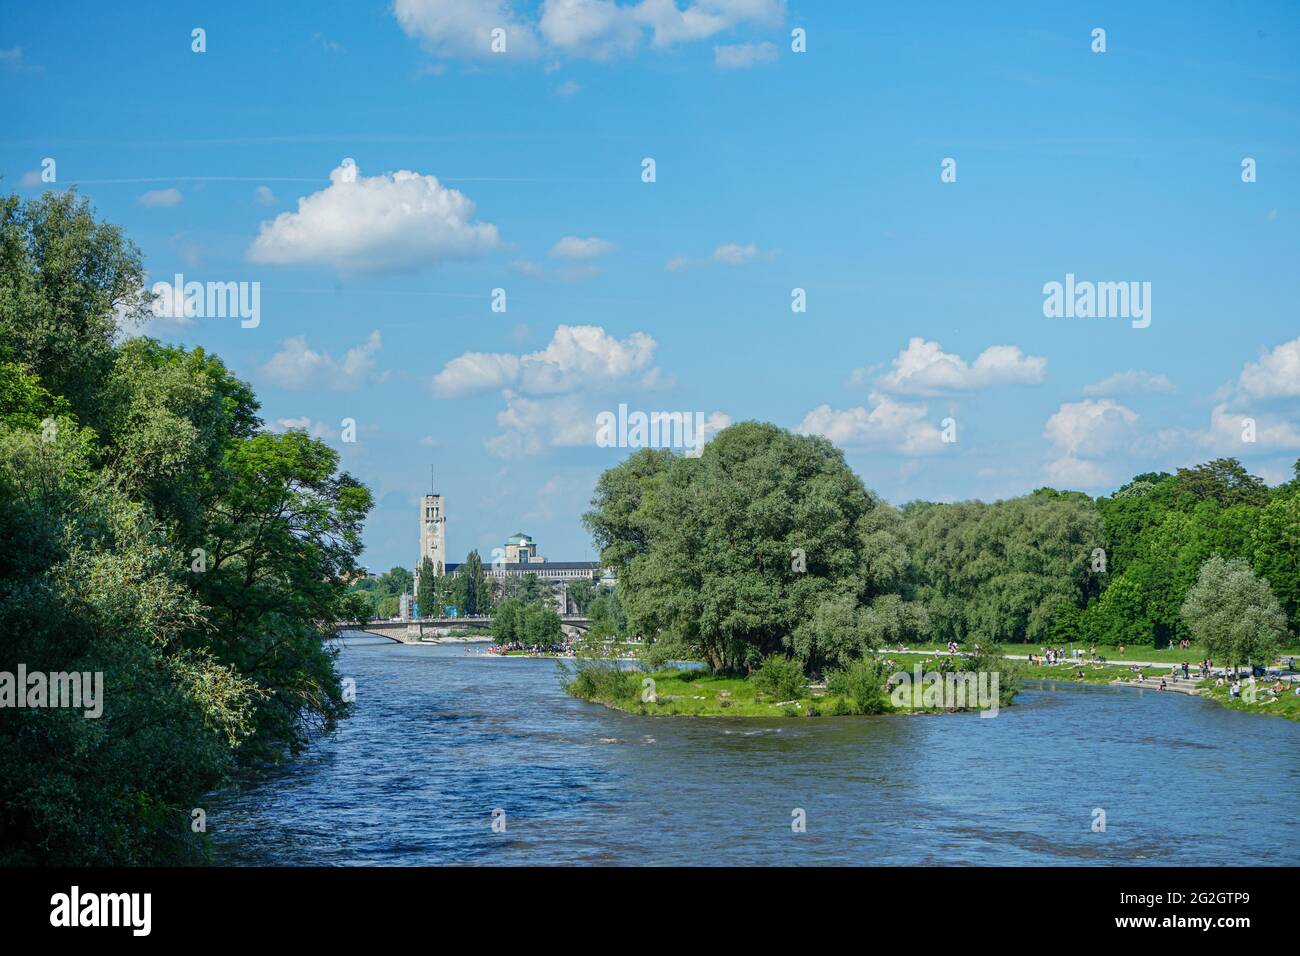 Nach den strengen Corona-Beschränkungen genießen die Menschen das Leben an einem warmen Sommertag am Ufer der Isar in München. Stockfoto